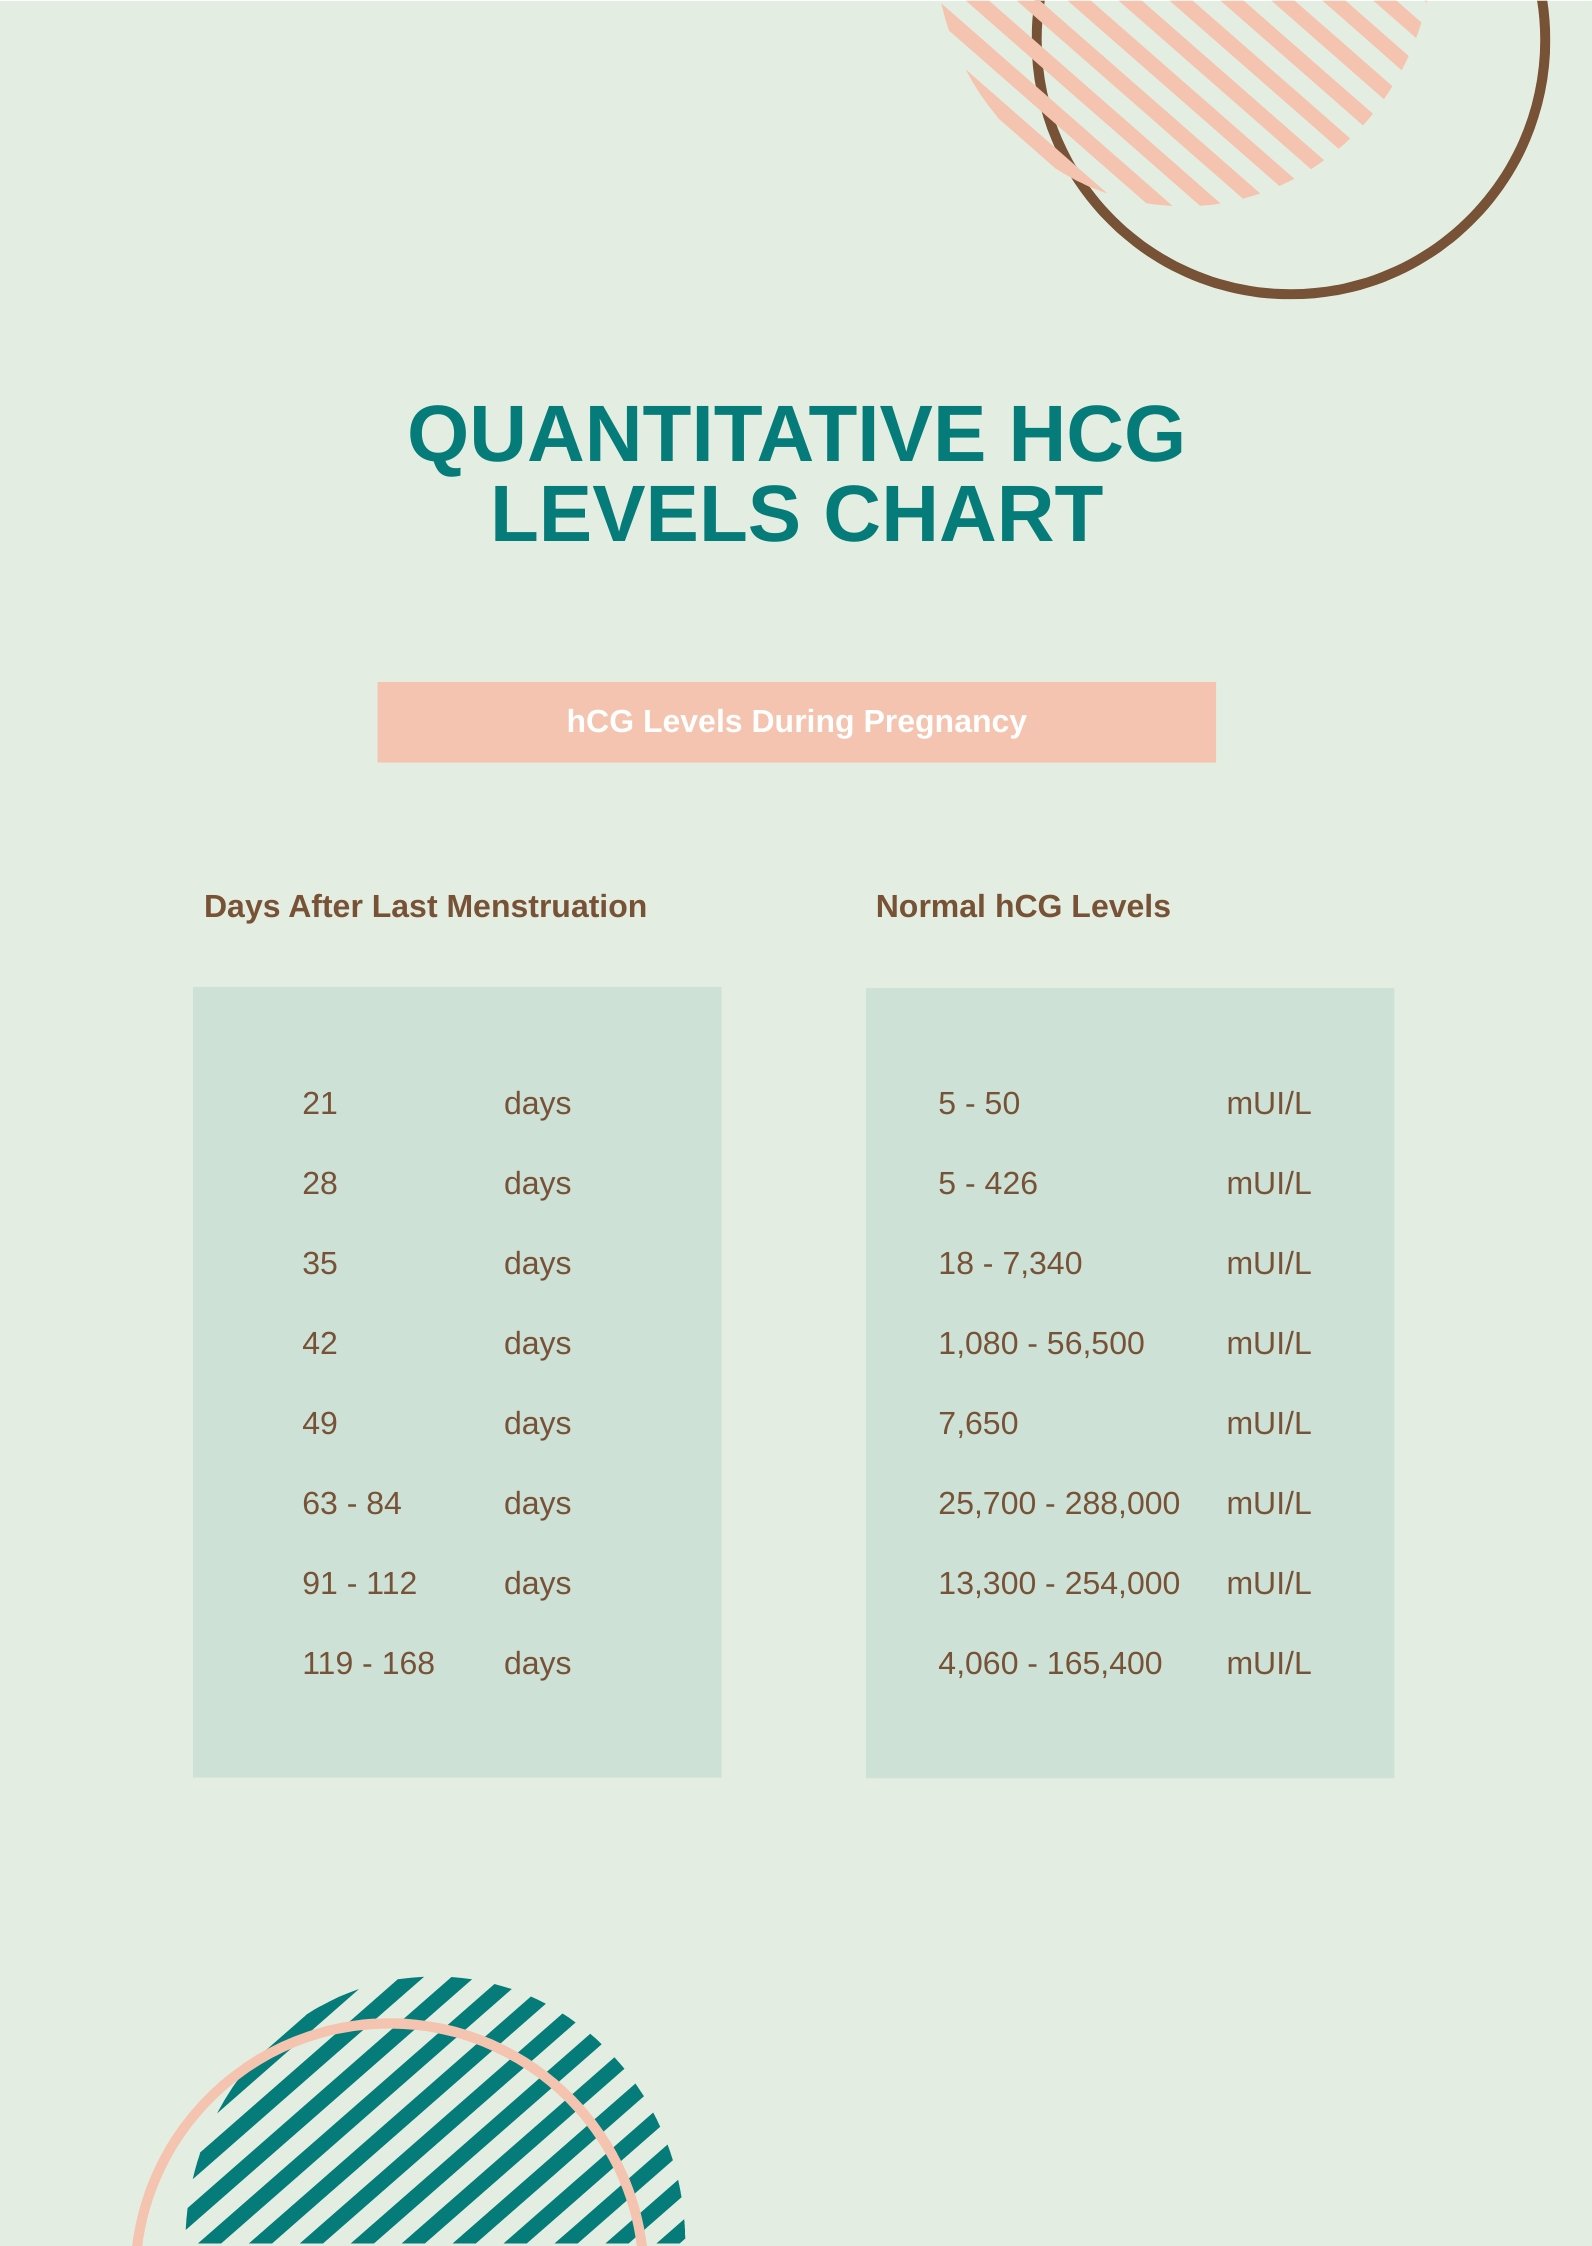 Quantitative HCG Levels Chart in PDF